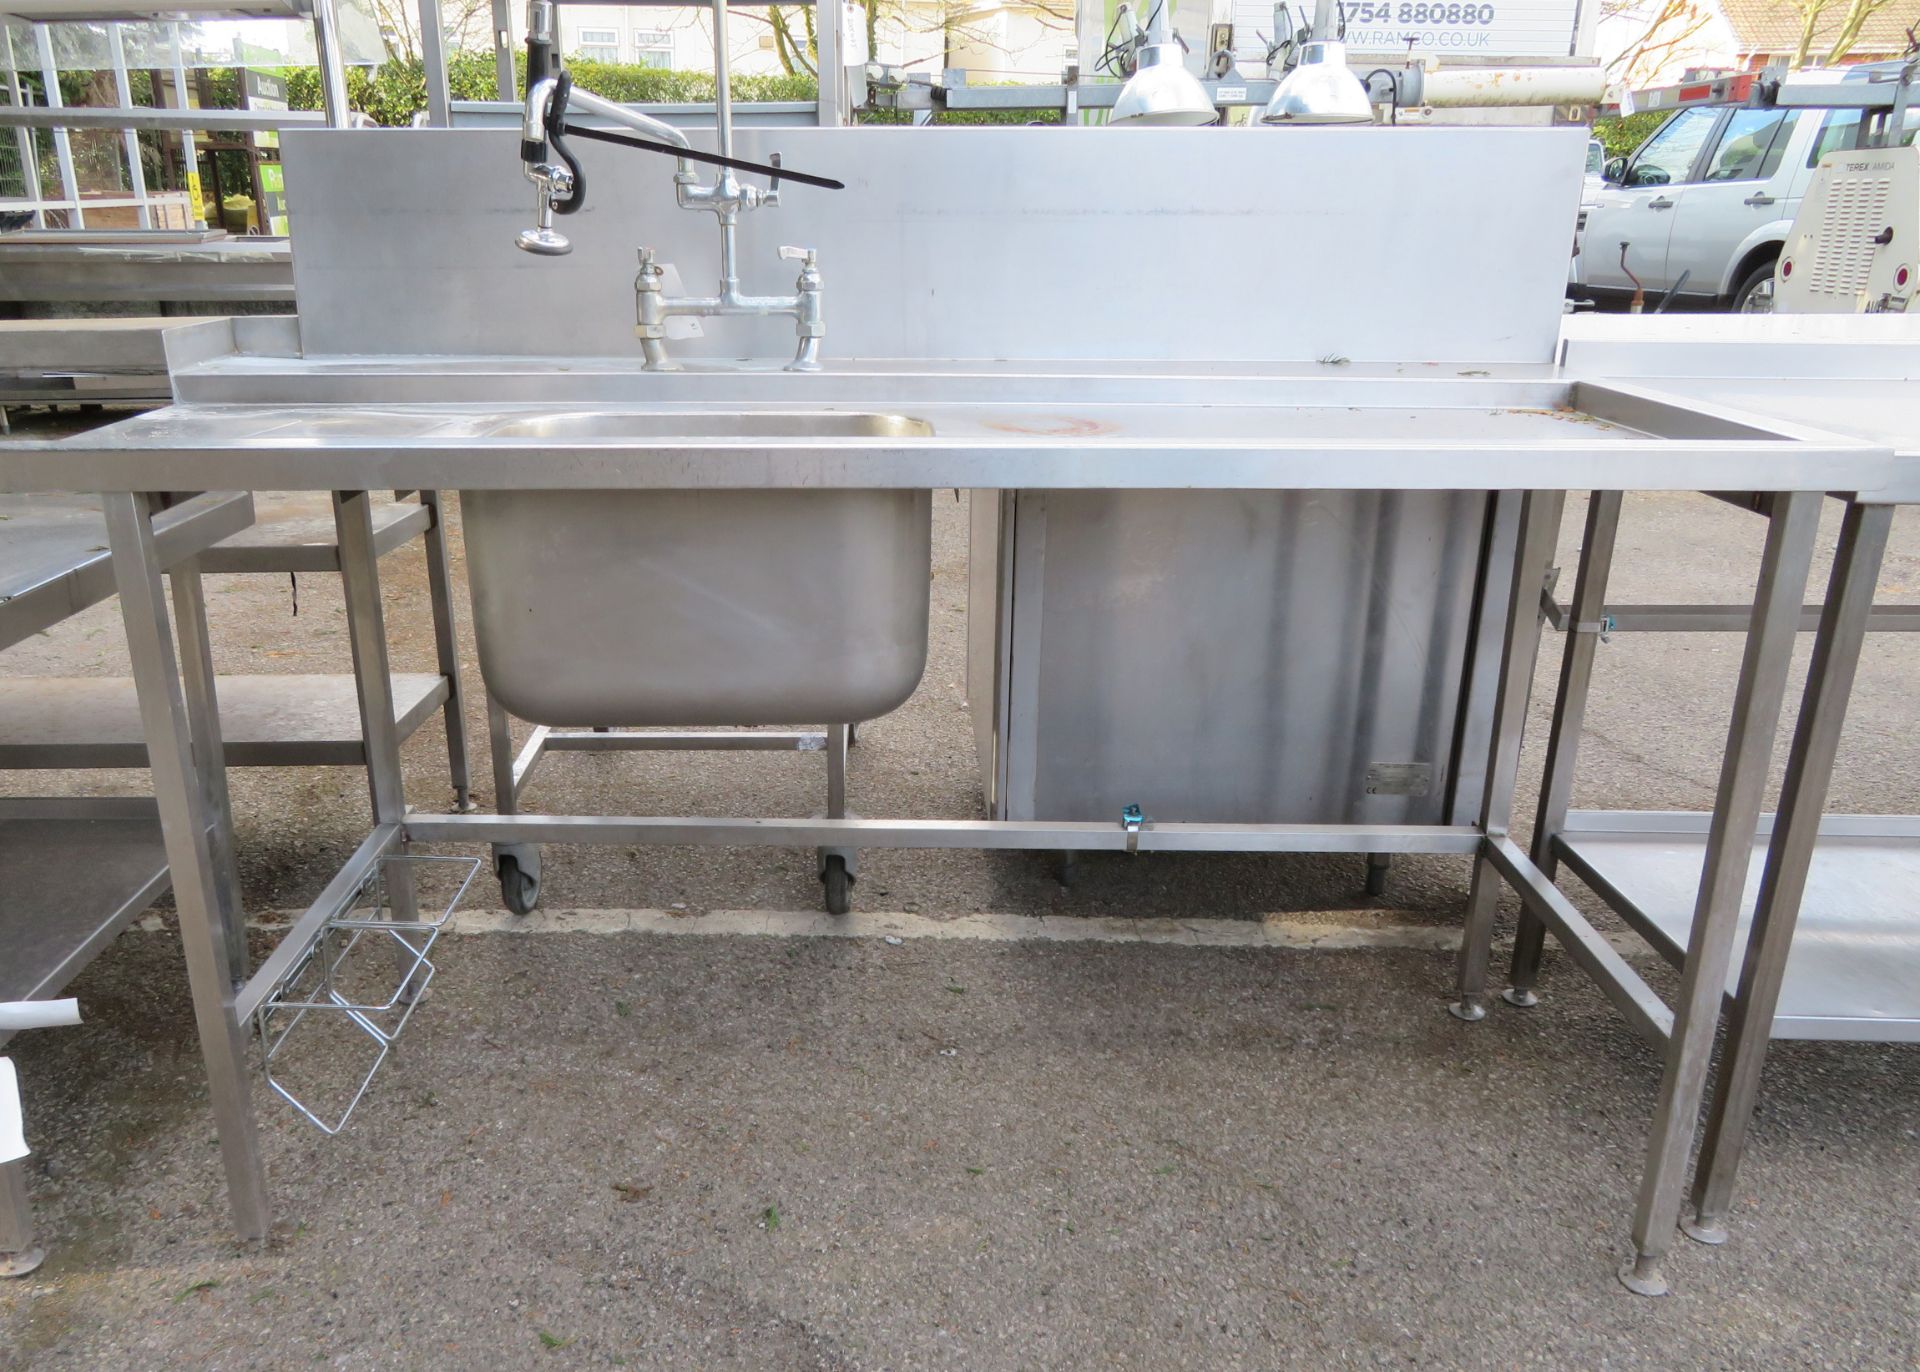 Sink unit with tap and hose 185 x 80 x 85cm (190 inc tap) - Bild 6 aus 6